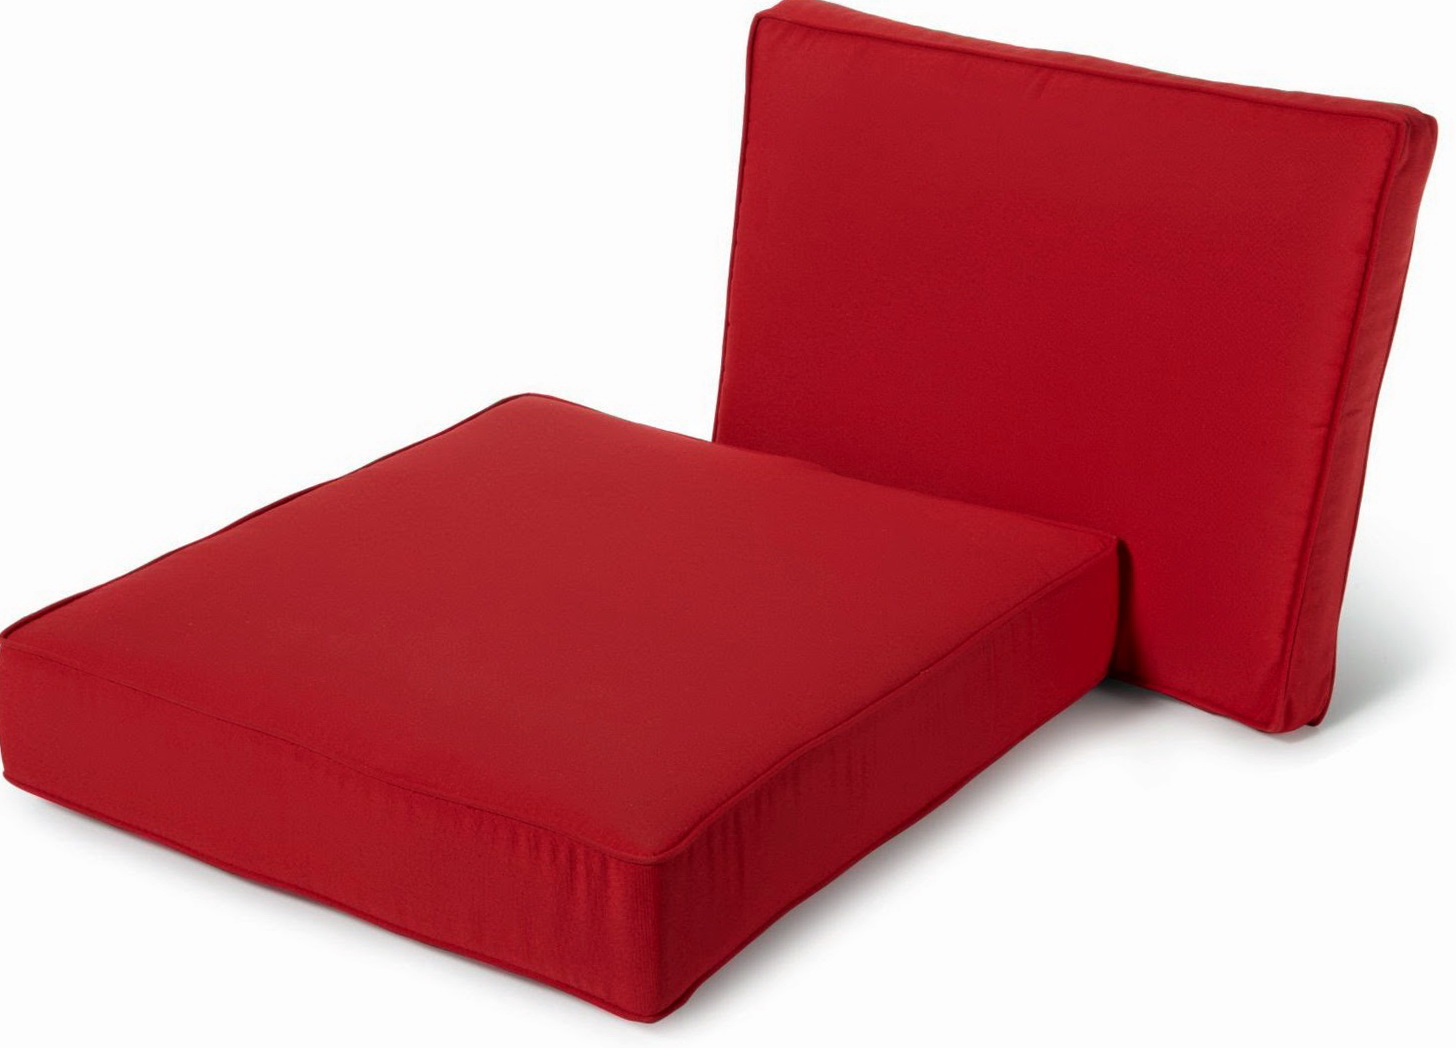 chair cushion covers